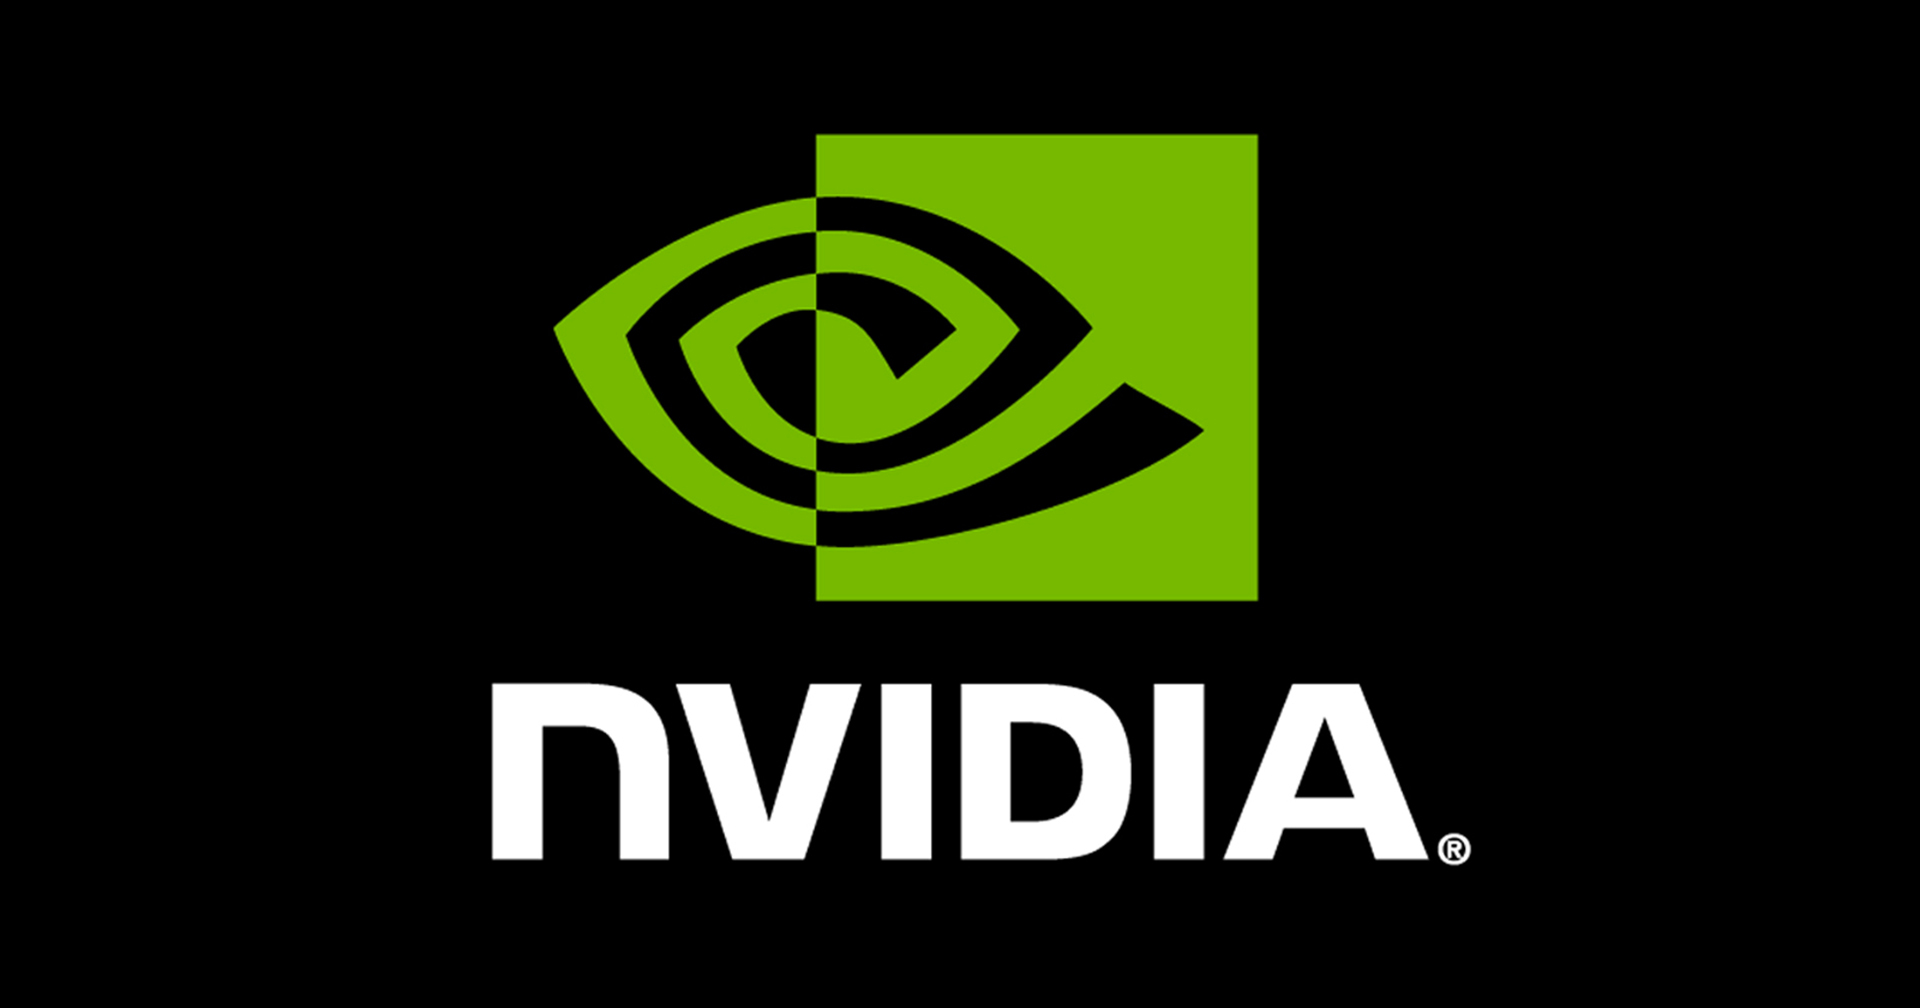 การ์ดจออาจถูกลง! รายงานเผย Nvidia สามารถลดต้นทุนการผลิตลงได้อีก 12%!